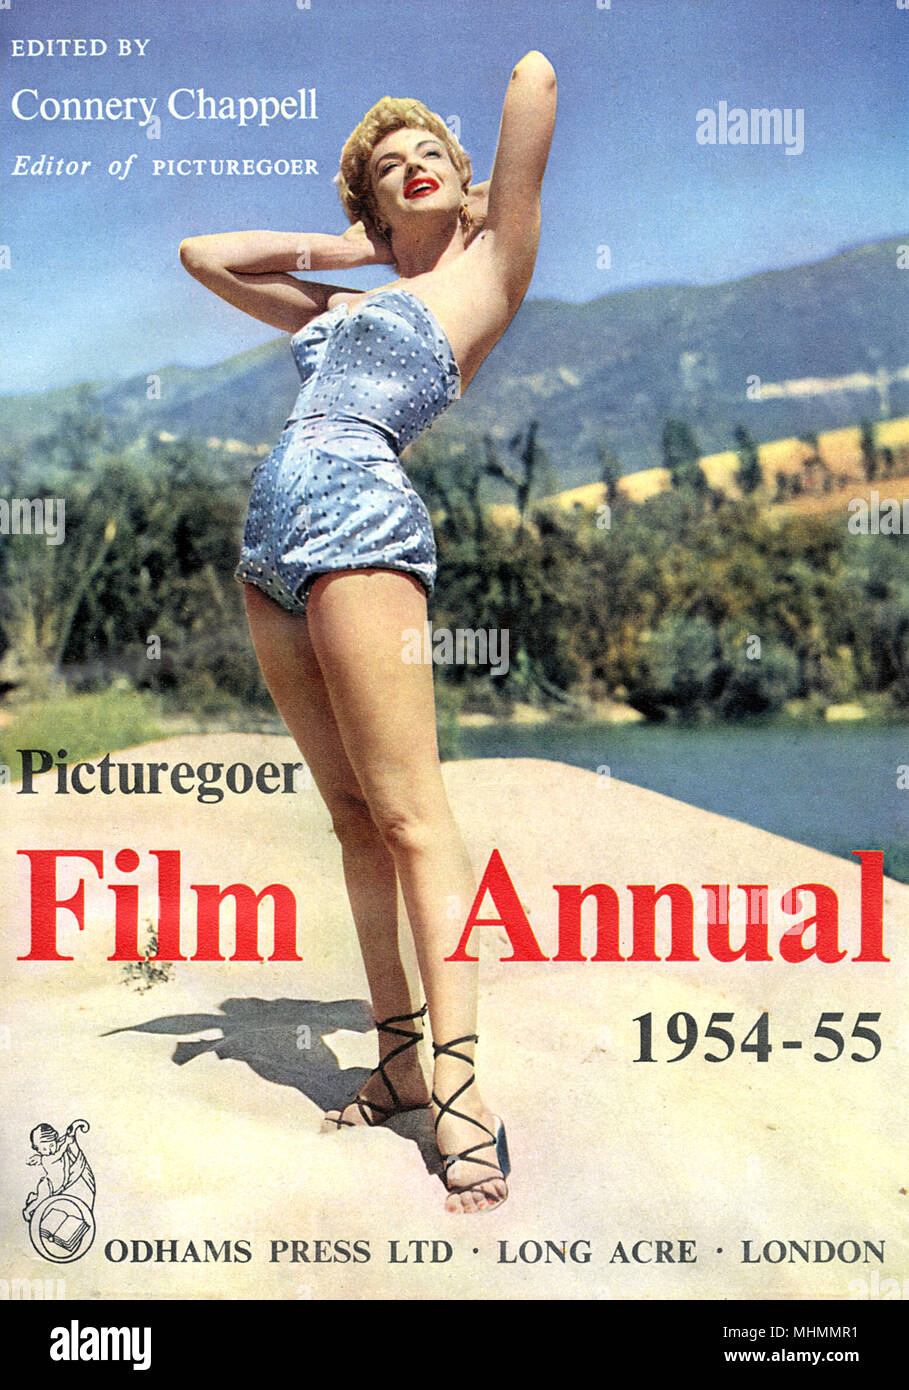 Couverture du film annuel Picturegoer, 1954-55 Banque D'Images